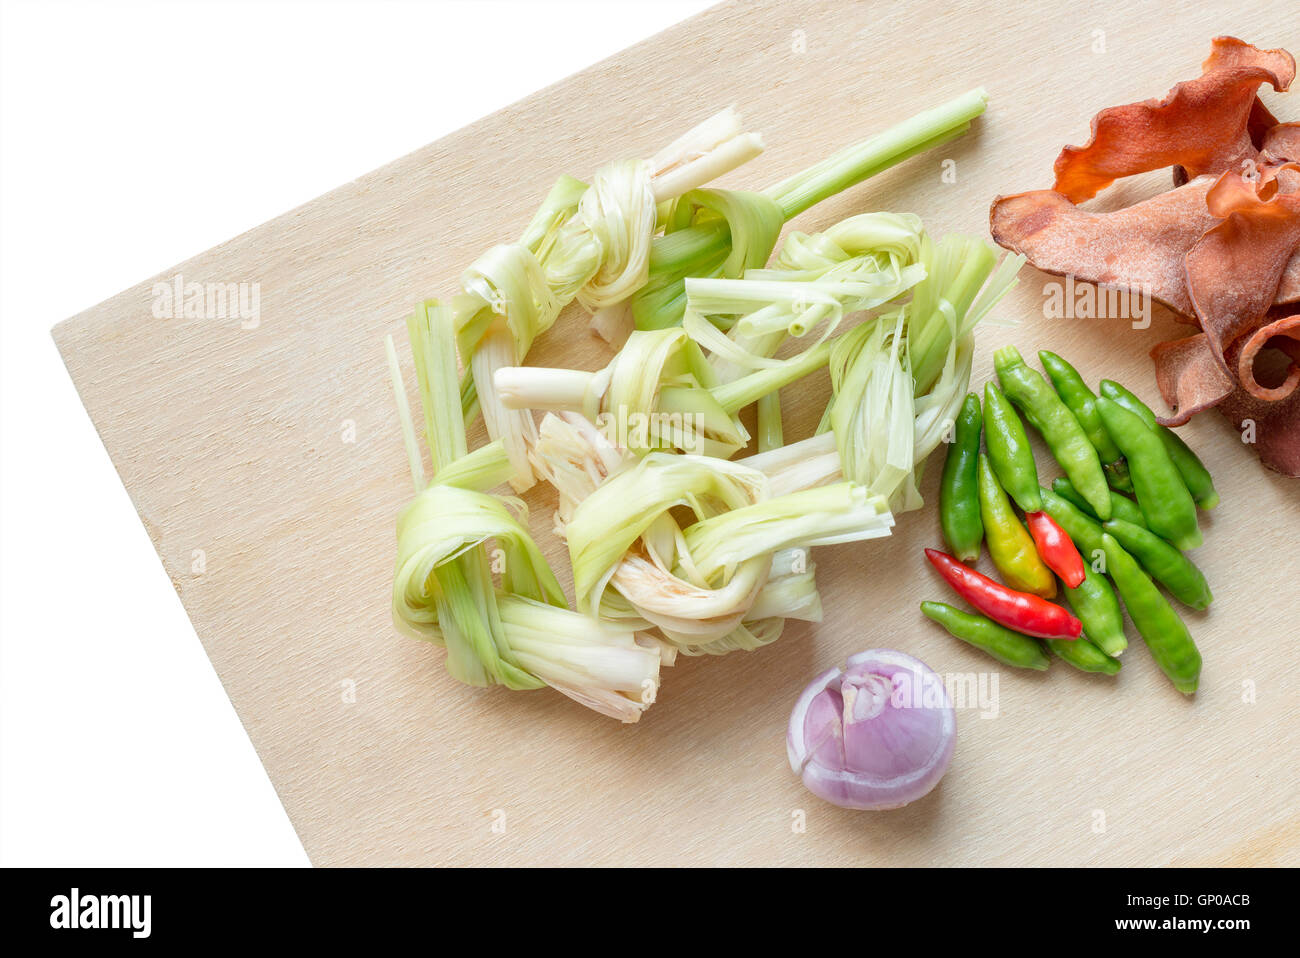 Standard-pflanzliche Zutaten für Thai-scharf-Suppe, saure Suppe, Curry. Draufsicht auf Holzutensilien. Isoliert auf weißem Hintergrund. Co Stockfoto